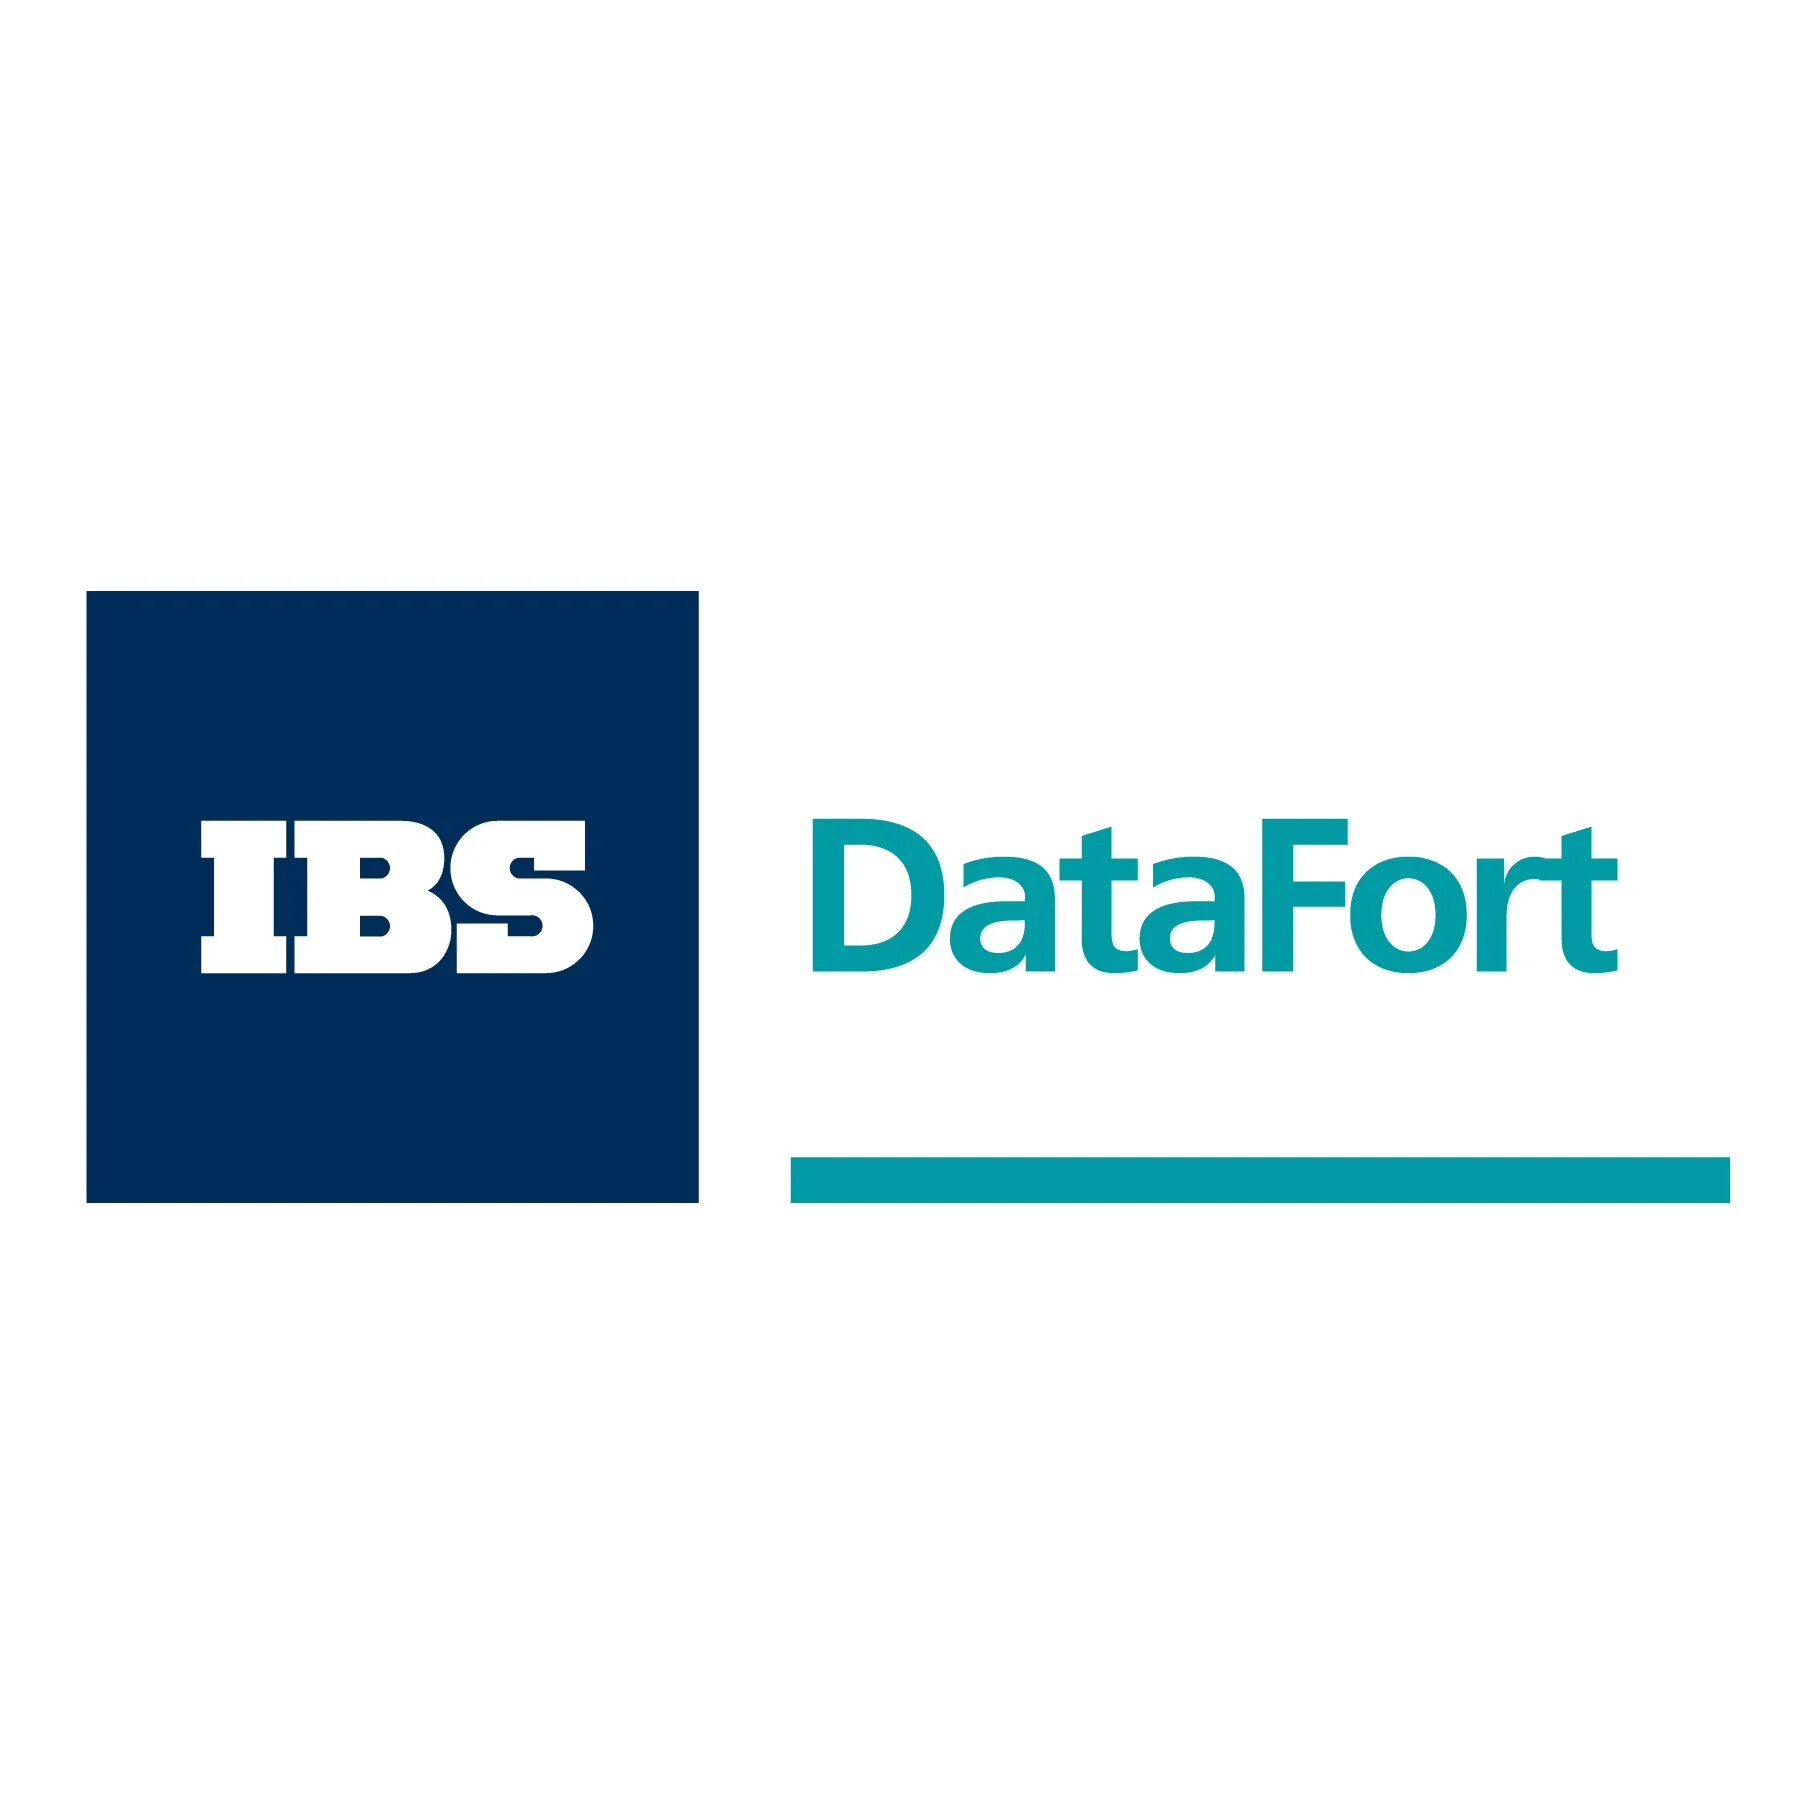 Ibs data. IBS DATAFORT. IBS логотип. ДАТАФОРТ лого. ИТ-компанию IBS.